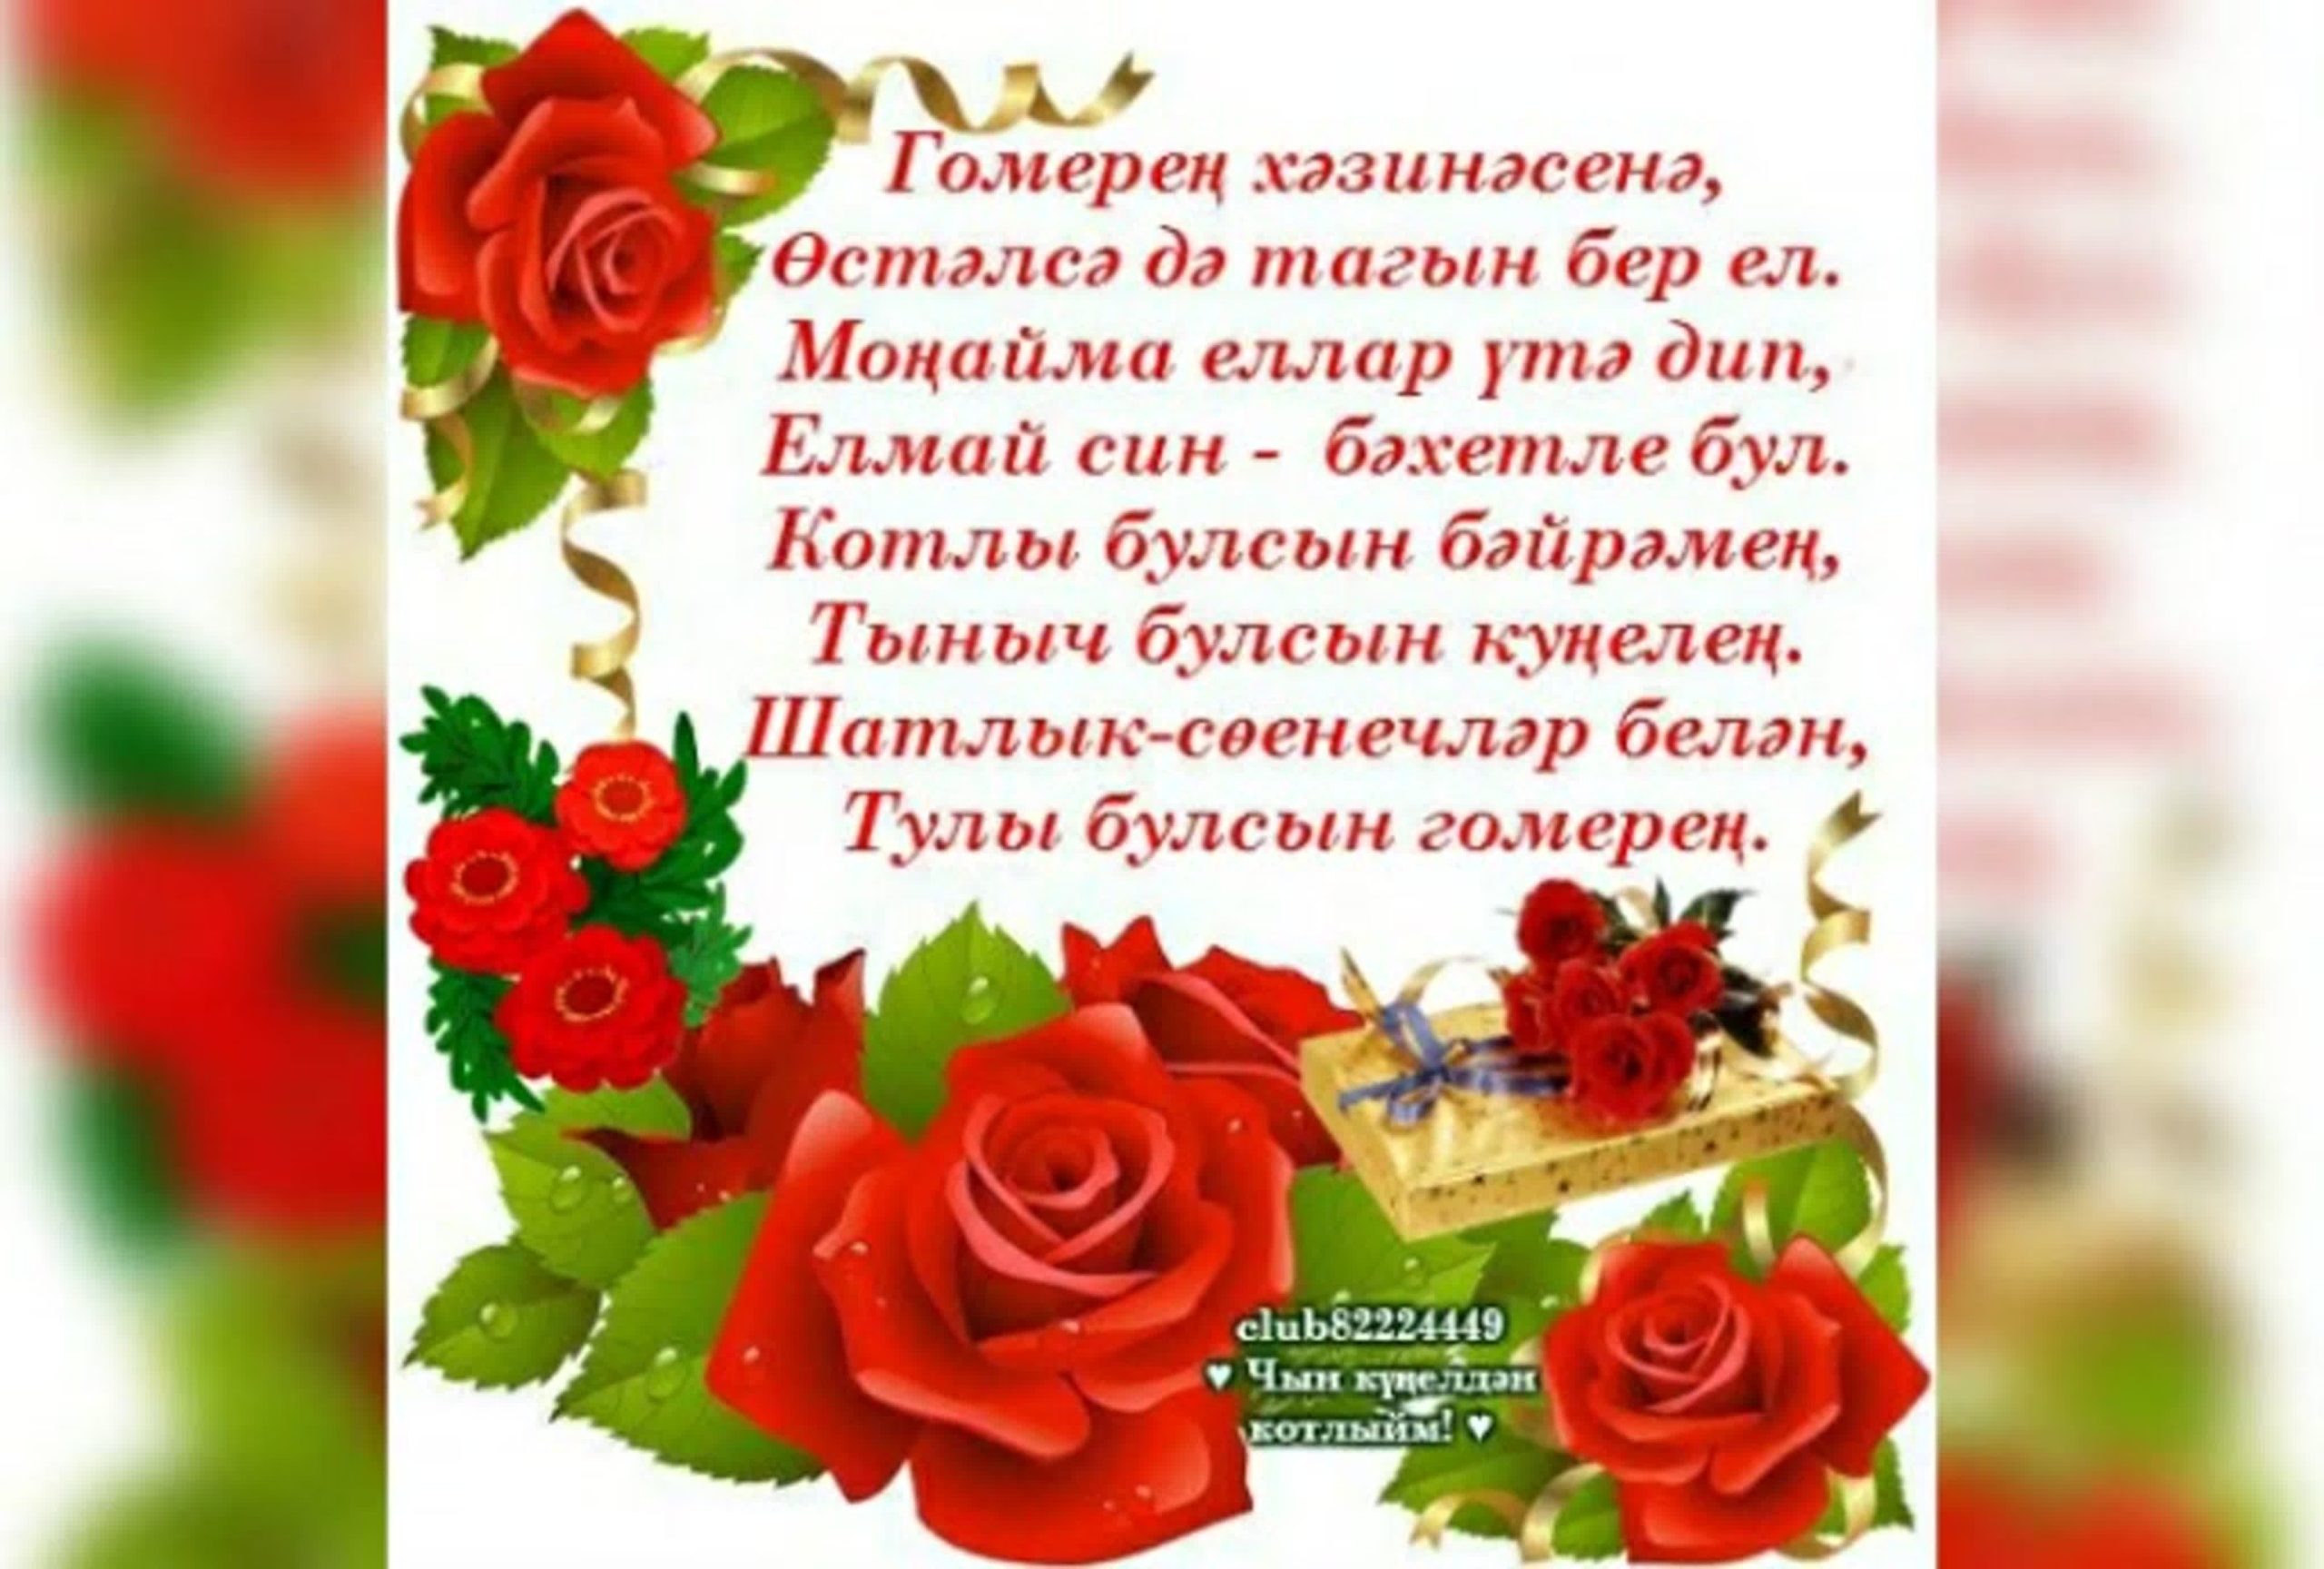 Чудесные фото и изображения для праздника С Днем матери на татарском